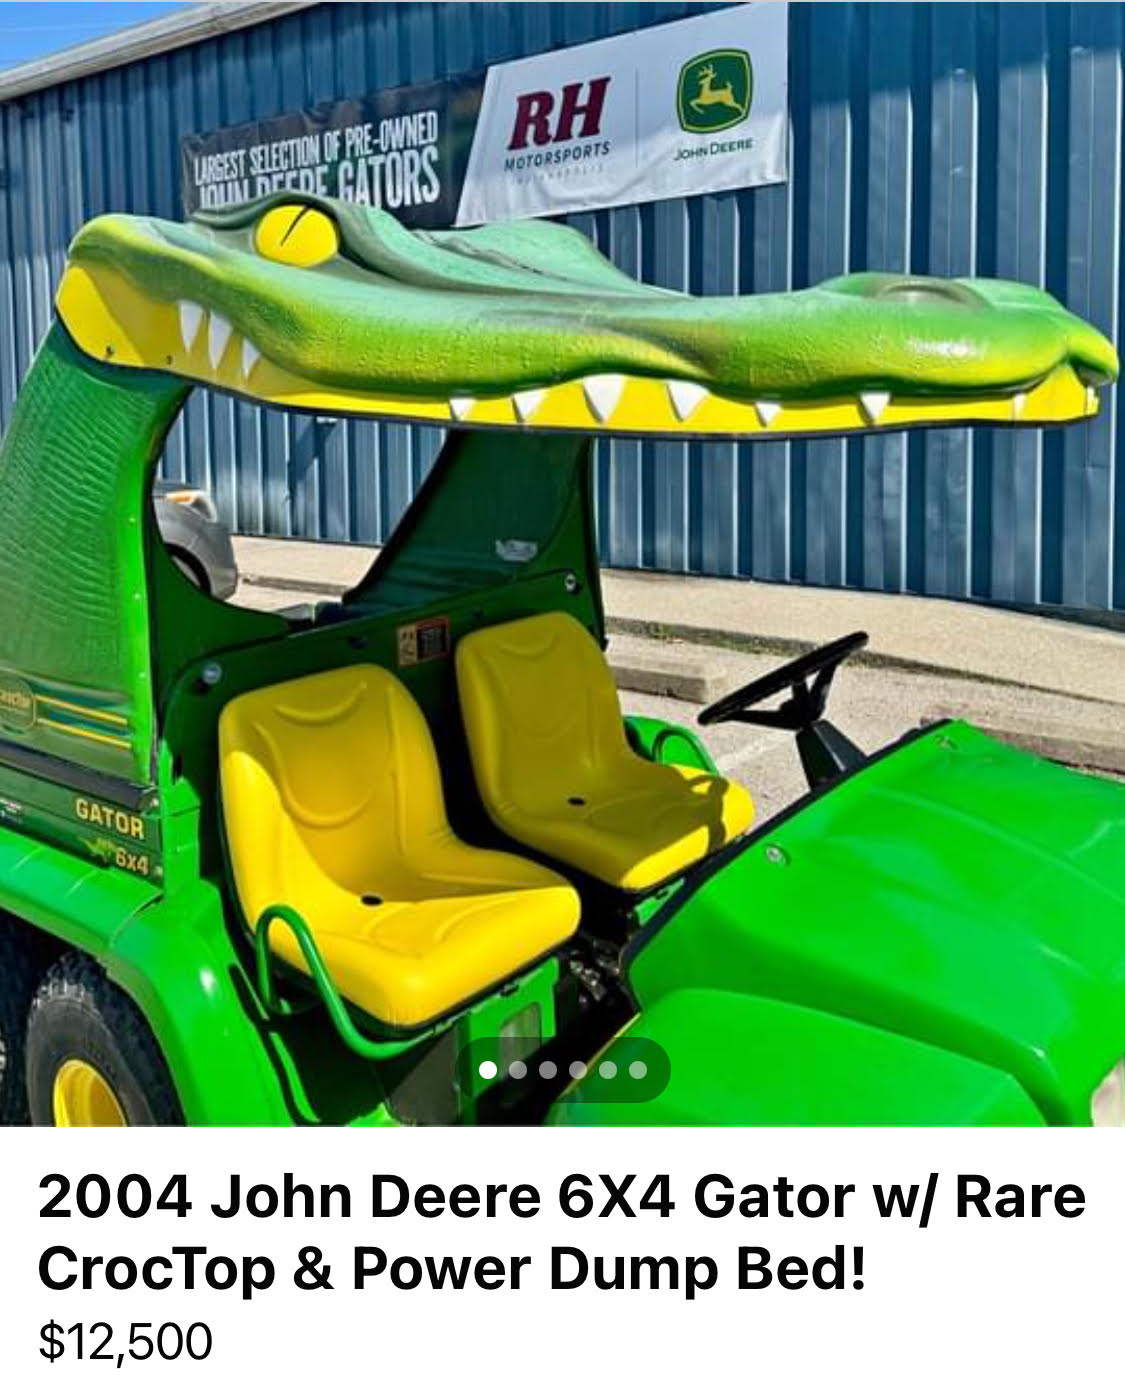 John Deere 2004 CrocTop